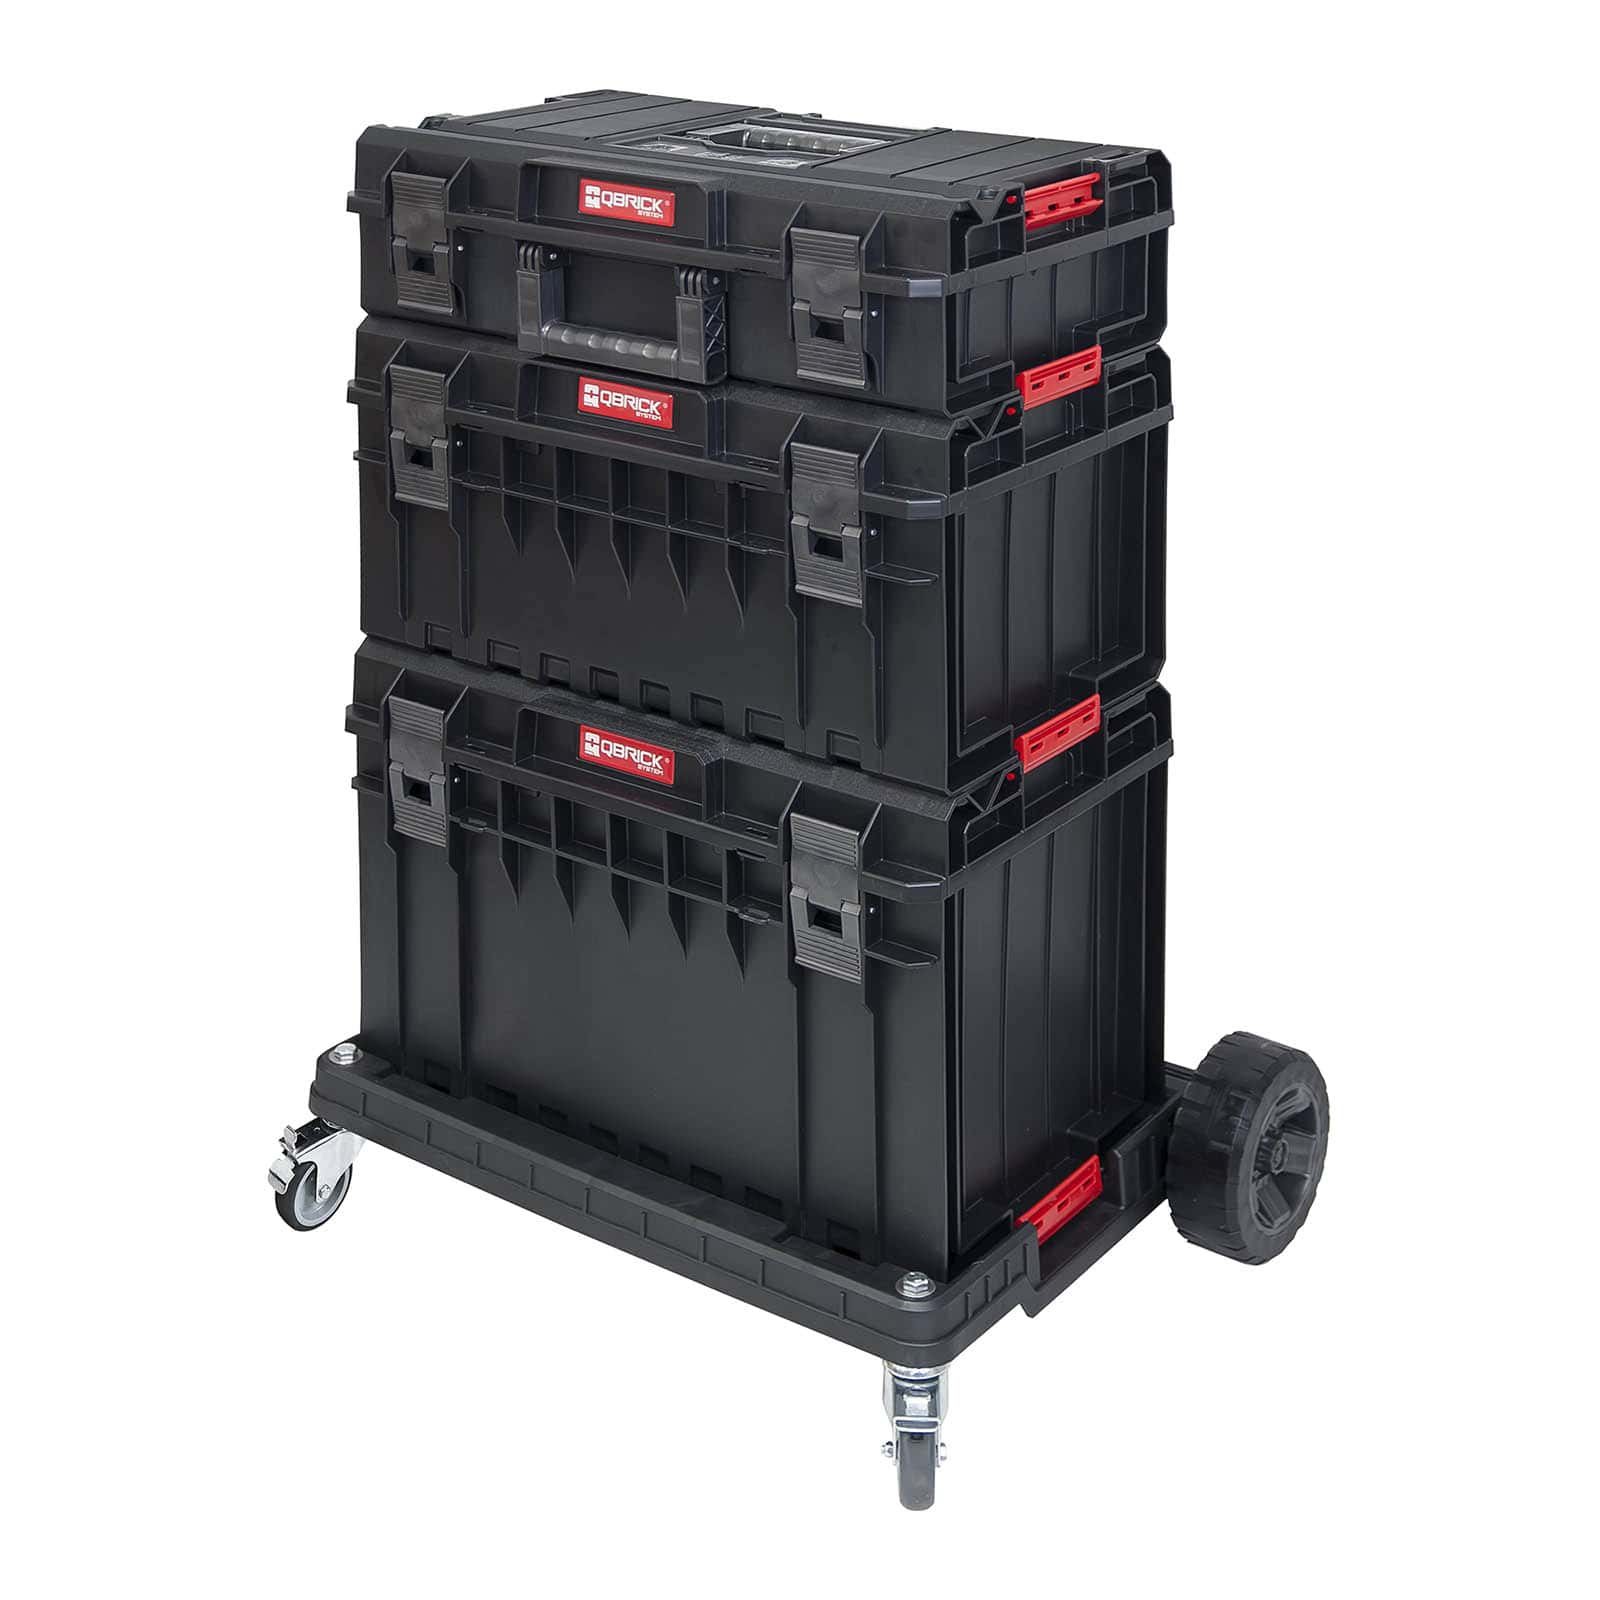 Kufr na nářadí – System One Basic – 3 kufry – 1 přepravní vozík - Kufry a boxy na nářadí Qbrick System